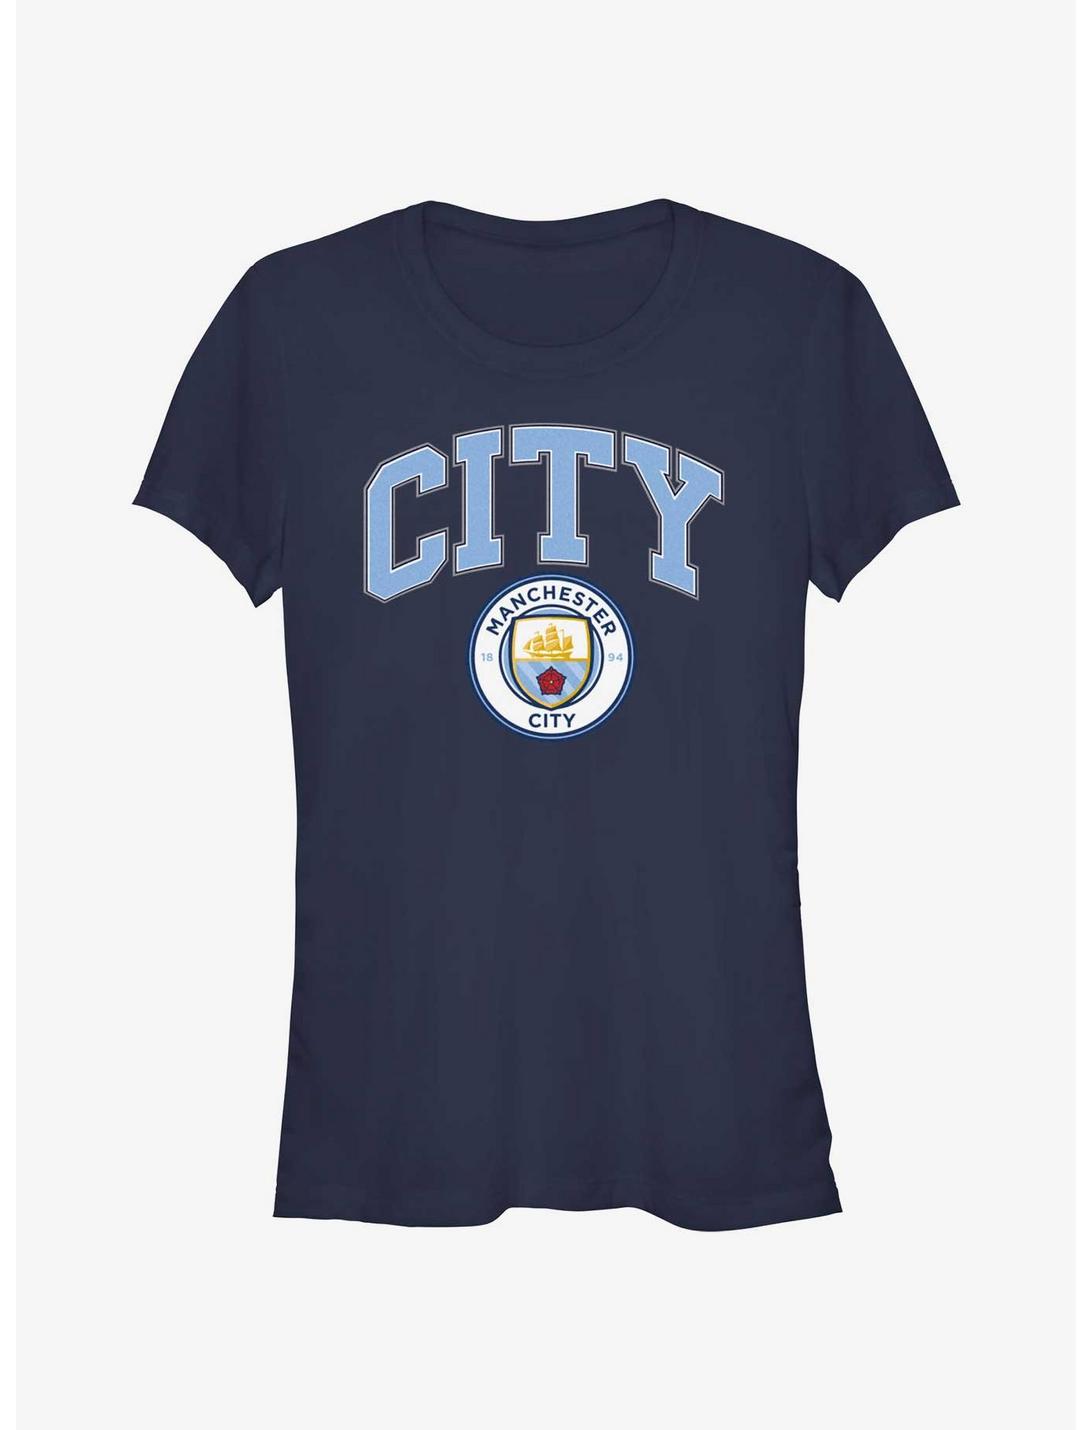 Premier League Manchester City F.C. City Girls T-Shirt, NAVY, hi-res